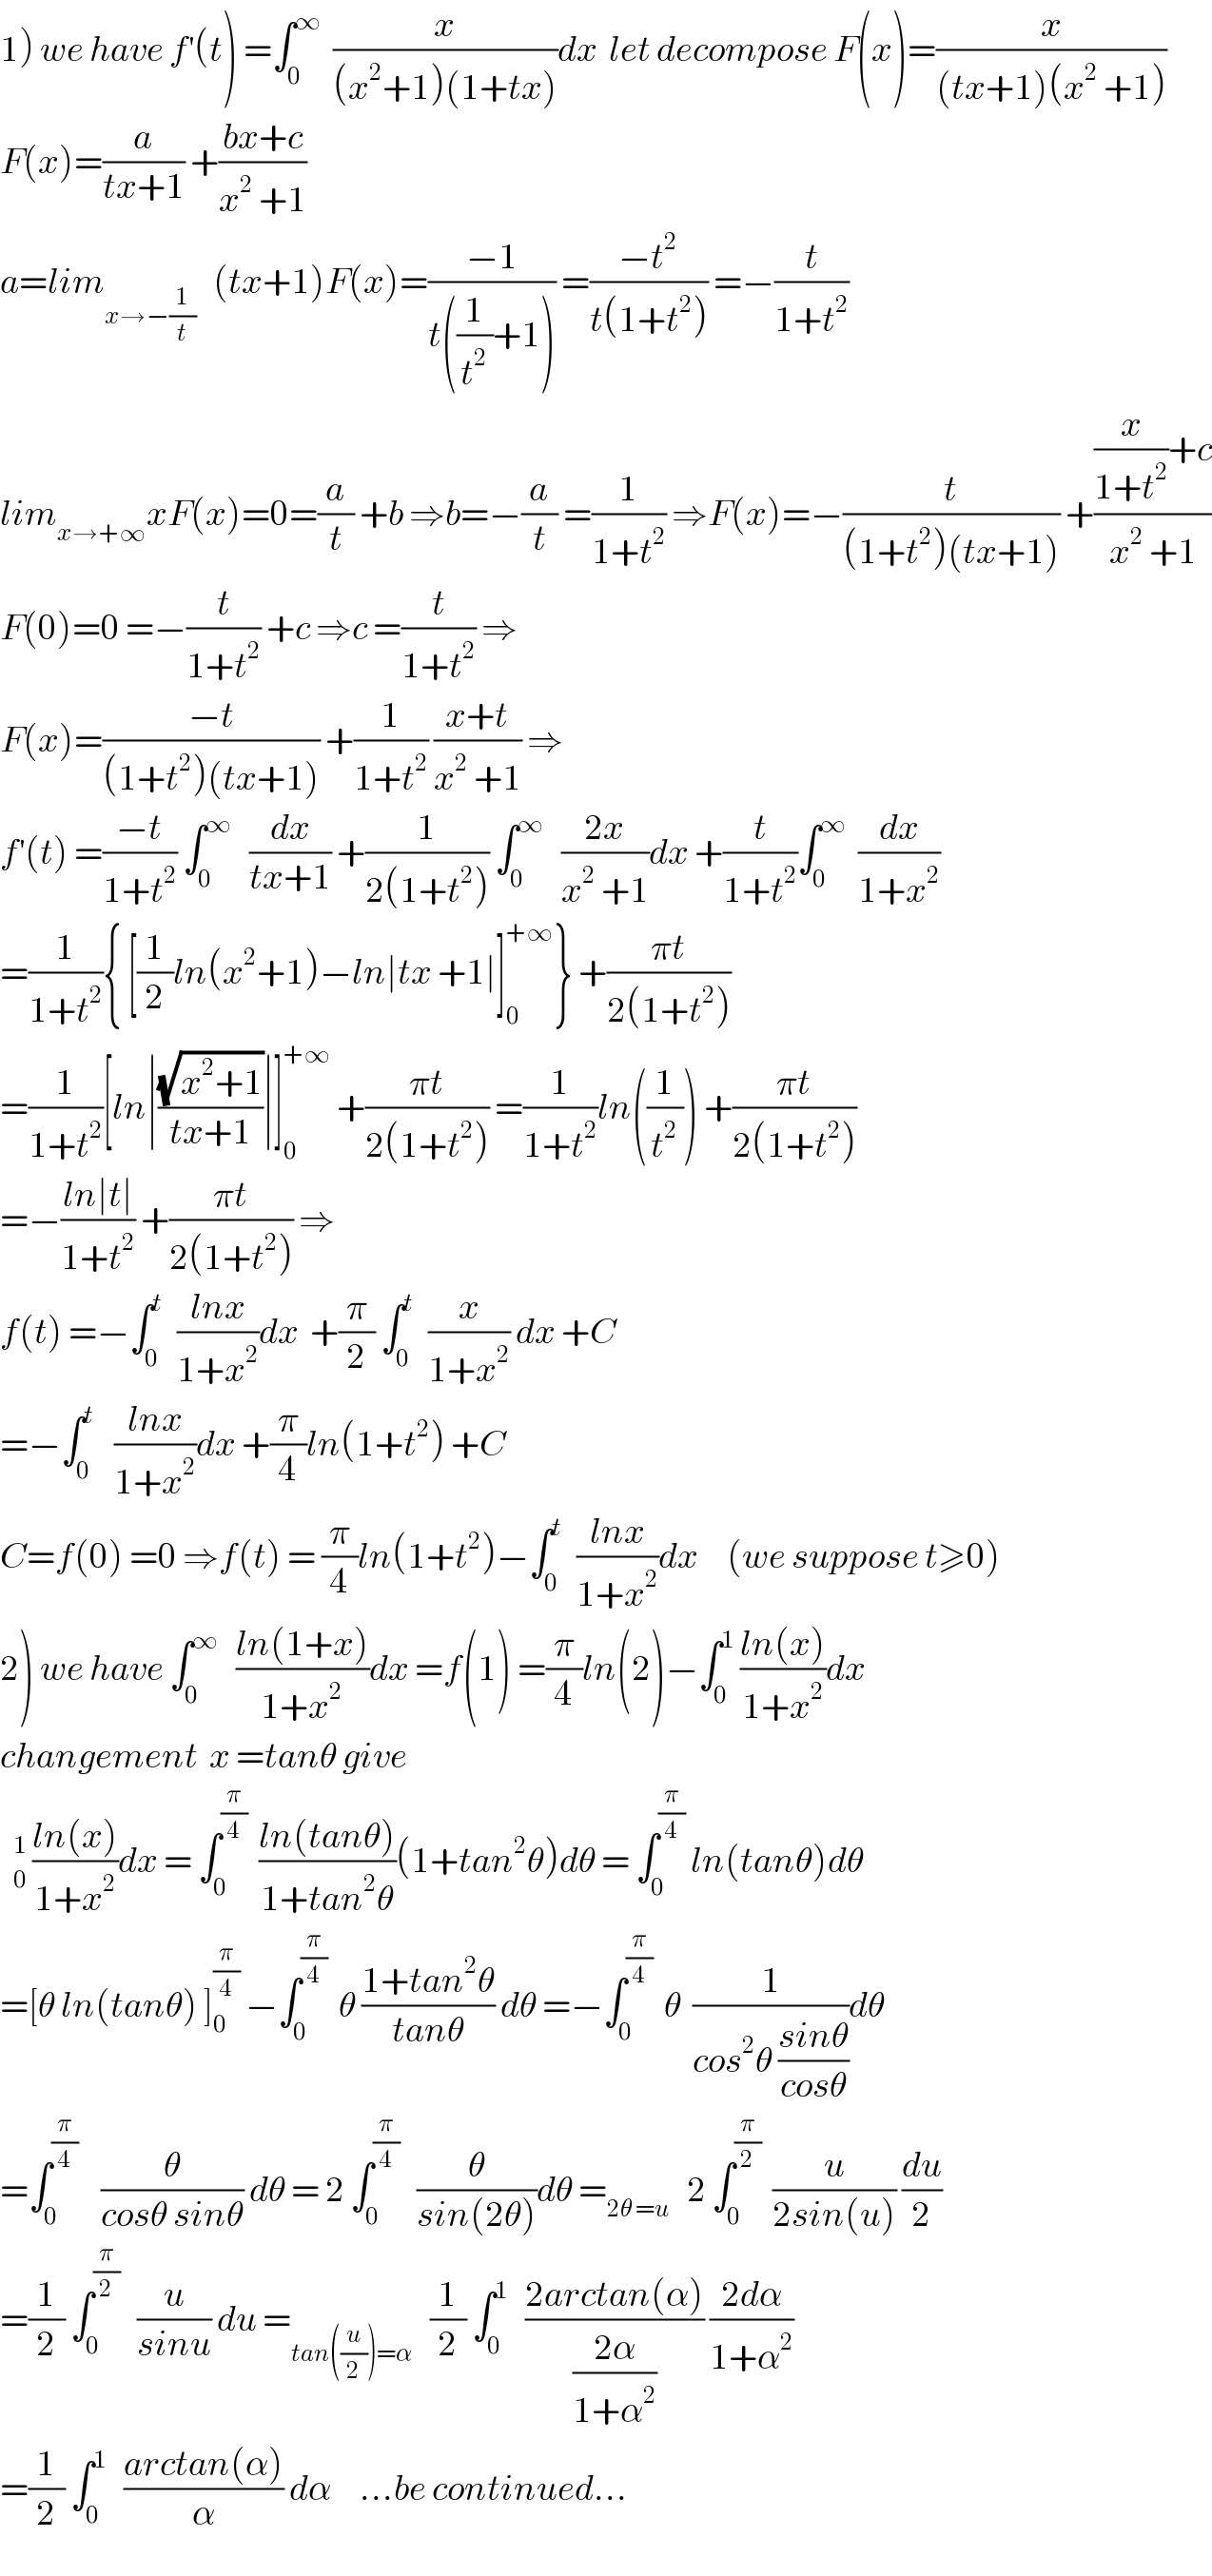 1) we have f^′ (t) =∫_0 ^∞   (x/((x^2 +1)(1+tx)))dx  let decompose F(x)=(x/((tx+1)(x^2  +1)))  F(x)=(a/(tx+1)) +((bx+c)/(x^2  +1))  a=lim_(x→−(1/t))    (tx+1)F(x)=((−1)/(t((1/t^2 )+1))) =((−t^2 )/(t(1+t^2 ))) =−(t/(1+t^2 ))  lim_(x→+∞) xF(x)=0=(a/t) +b ⇒b=−(a/t) =(1/(1+t^2 )) ⇒F(x)=−(t/((1+t^2 )(tx+1))) +(((x/(1+t^2 ))+c)/(x^2  +1))  F(0)=0 =−(t/(1+t^2 )) +c ⇒c =(t/(1+t^2 )) ⇒  F(x)=((−t)/((1+t^2 )(tx+1))) +(1/(1+t^2 )) ((x+t)/(x^2  +1)) ⇒  f^′ (t) =((−t)/(1+t^2 )) ∫_0 ^∞    (dx/(tx+1)) +(1/(2(1+t^2 ))) ∫_0 ^∞    ((2x)/(x^2  +1))dx +(t/(1+t^2 ))∫_0 ^∞   (dx/(1+x^2 ))  =(1/(1+t^2 )){ [(1/2)ln(x^2 +1)−ln∣tx +1∣]_0 ^(+∞) } +((πt)/(2(1+t^2 )))  =(1/(1+t^2 ))[ln∣((√(x^2 +1))/(tx+1))∣]_0 ^(+∞)  +((πt)/(2(1+t^2 ))) =(1/(1+t^2 ))ln((1/t^2 )) +((πt)/(2(1+t^2 )))  =−((ln∣t∣)/(1+t^2 )) +((πt)/(2(1+t^2 ))) ⇒  f(t) =−∫_0 ^t   ((lnx)/(1+x^2 ))dx  +(π/2) ∫_0 ^t   (x/(1+x^2 )) dx +C  =−∫_0 ^t    ((lnx)/(1+x^2 ))dx +(π/4)ln(1+t^2 ) +C  C=f(0) =0 ⇒f(t) = (π/4)ln(1+t^2 )−∫_0 ^t   ((lnx)/(1+x^2 ))dx     (we suppose t≥0)  2) we have ∫_0 ^∞    ((ln(1+x))/(1+x^2 ))dx =f(1) =(π/4)ln(2)−∫_0 ^1  ((ln(x))/(1+x^2 ))dx  changement  x =tanθ give    ((ln(x))/(1+x^2 ))dx = ∫_0 ^(π/4)   ((ln(tanθ))/(1+tan^2 θ))(1+tan^2 θ)dθ = ∫_0 ^(π/4)  ln(tanθ)dθ  =[θ ln(tanθ) ]_0 ^(π/4)  −∫_0 ^(π/4)   θ ((1+tan^2 θ)/(tanθ)) dθ =−∫_0 ^(π/4)   θ  (1/(cos^2 θ ((sinθ)/(cosθ))))dθ  =∫_0 ^(π/4)     (θ/(cosθ sinθ)) dθ = 2 ∫_0 ^(π/4)    (θ/(sin(2θ)))dθ =_(2θ =u)    2 ∫_0 ^(π/2)   (u/(2sin(u))) (du/2)  =(1/2) ∫_0 ^(π/2)    (u/(sinu)) du =_(tan((u/2))=α)    (1/2) ∫_0 ^1    ((2arctan(α))/((2α)/(1+α^2 ))) ((2dα)/(1+α^2 ))  =(1/2) ∫_0 ^1    ((arctan(α))/α) dα     ...be continued...  